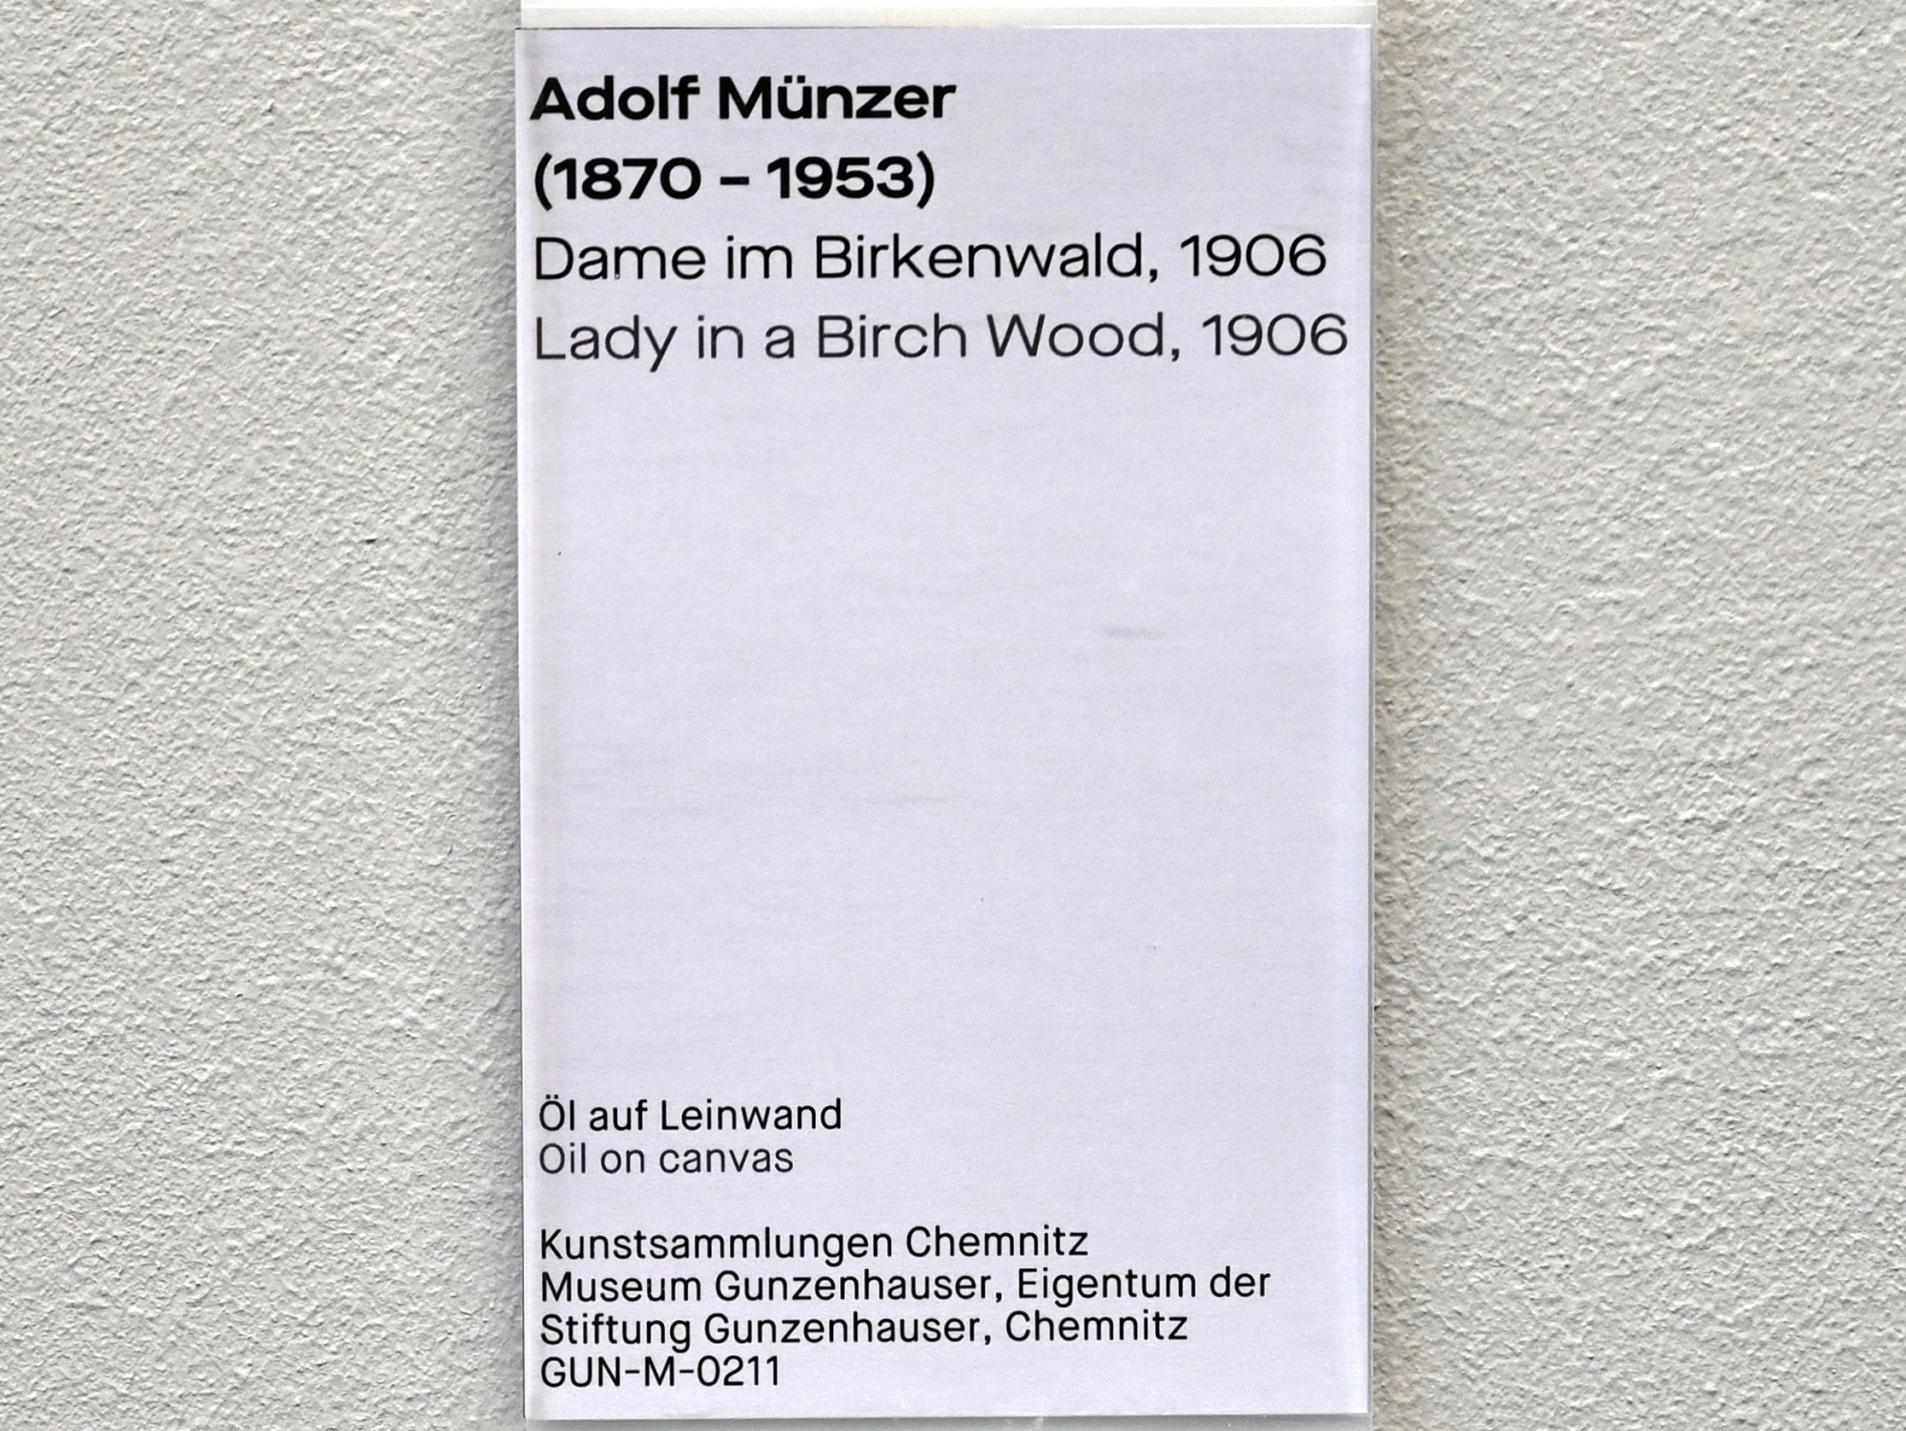 Adolf Münzer (1906), Dame im Birkenwald, Chemnitz, Museum Gunzenhauser, Saal 3.4, 1906, Bild 2/2